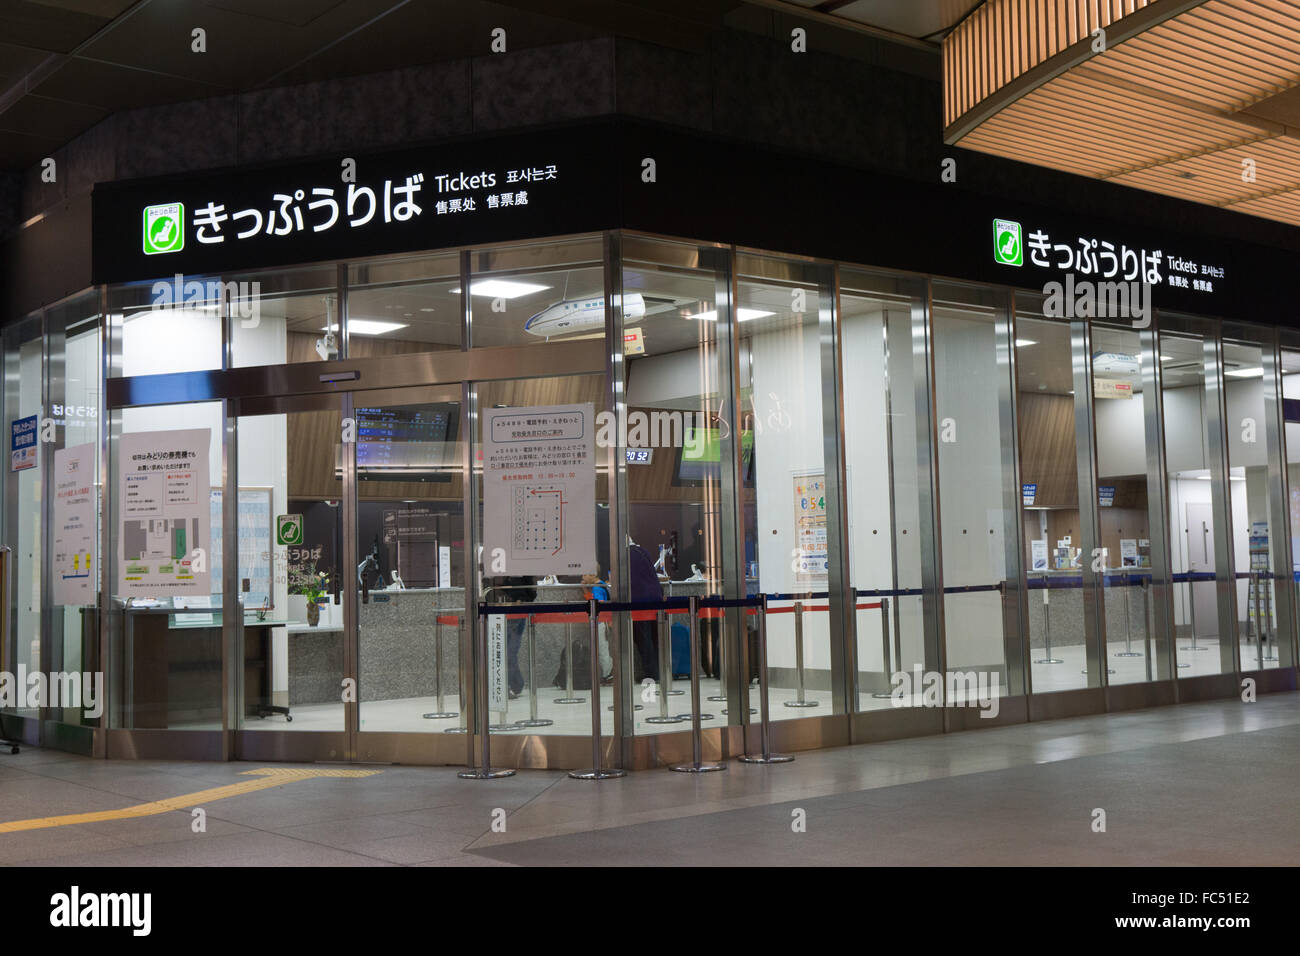 La estación de trenes de Japón taquillas Foto de stock